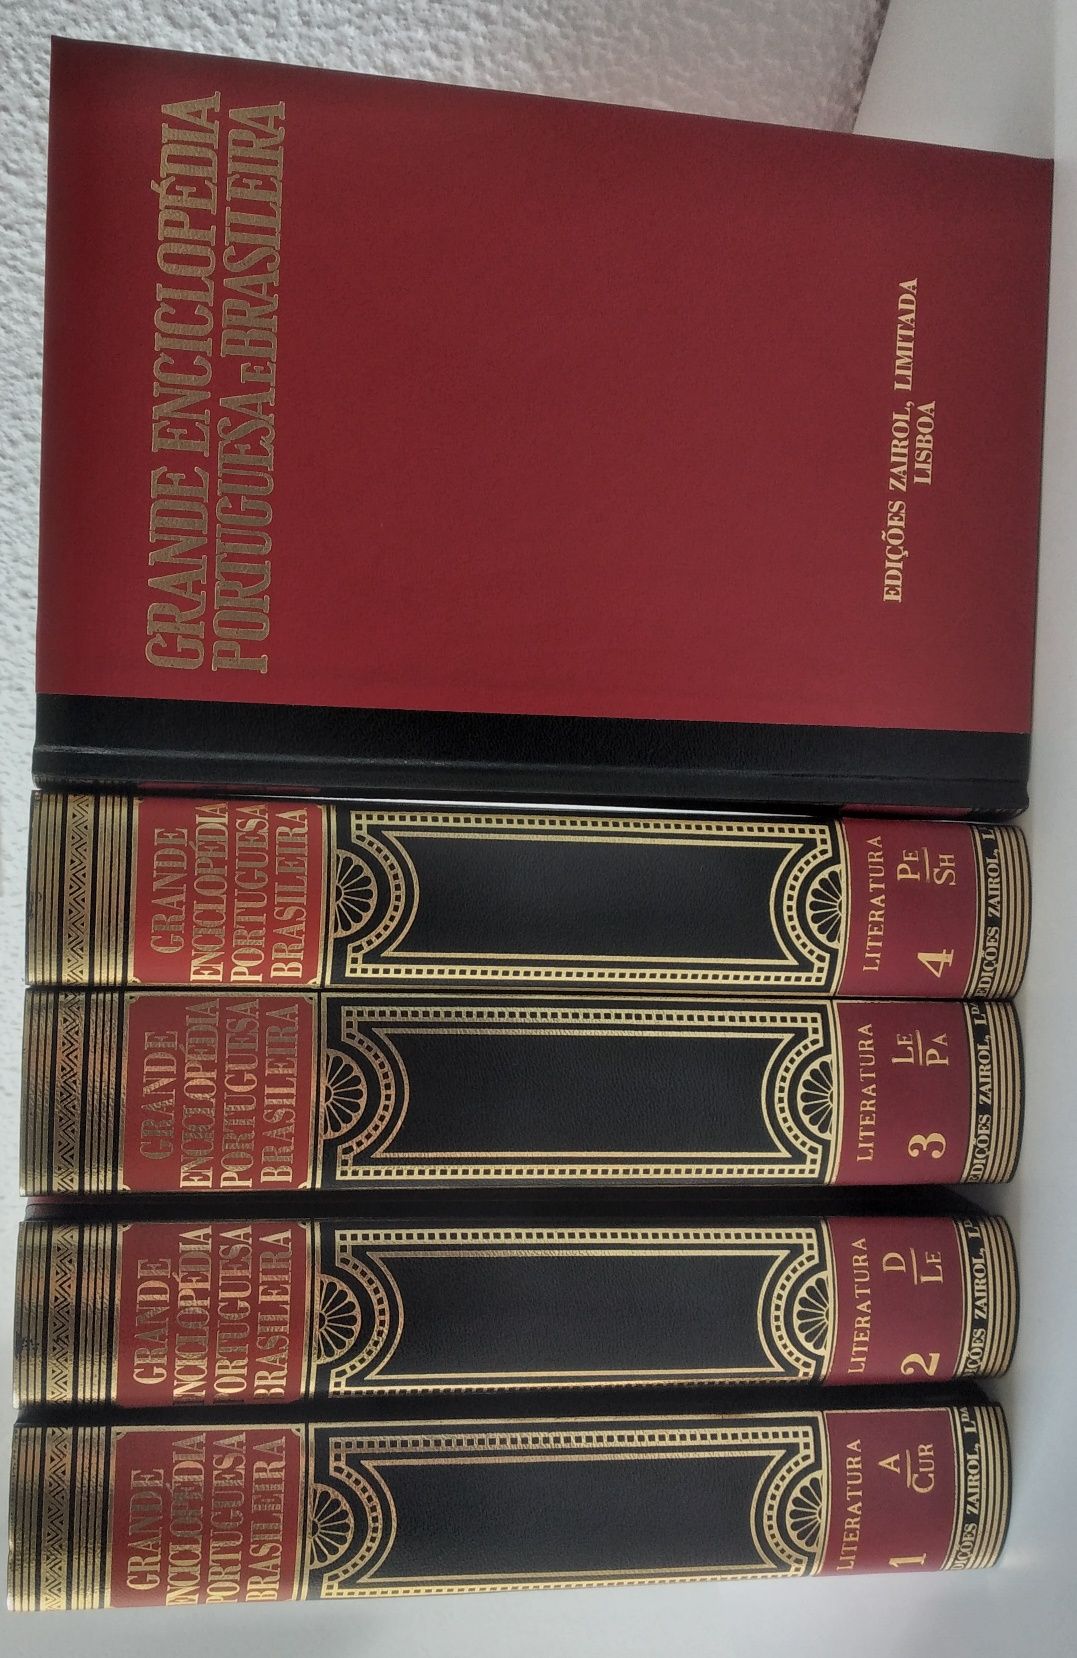 Literatura - 5 livros da Grande Enciclopédia Portuguesa e Brasileira